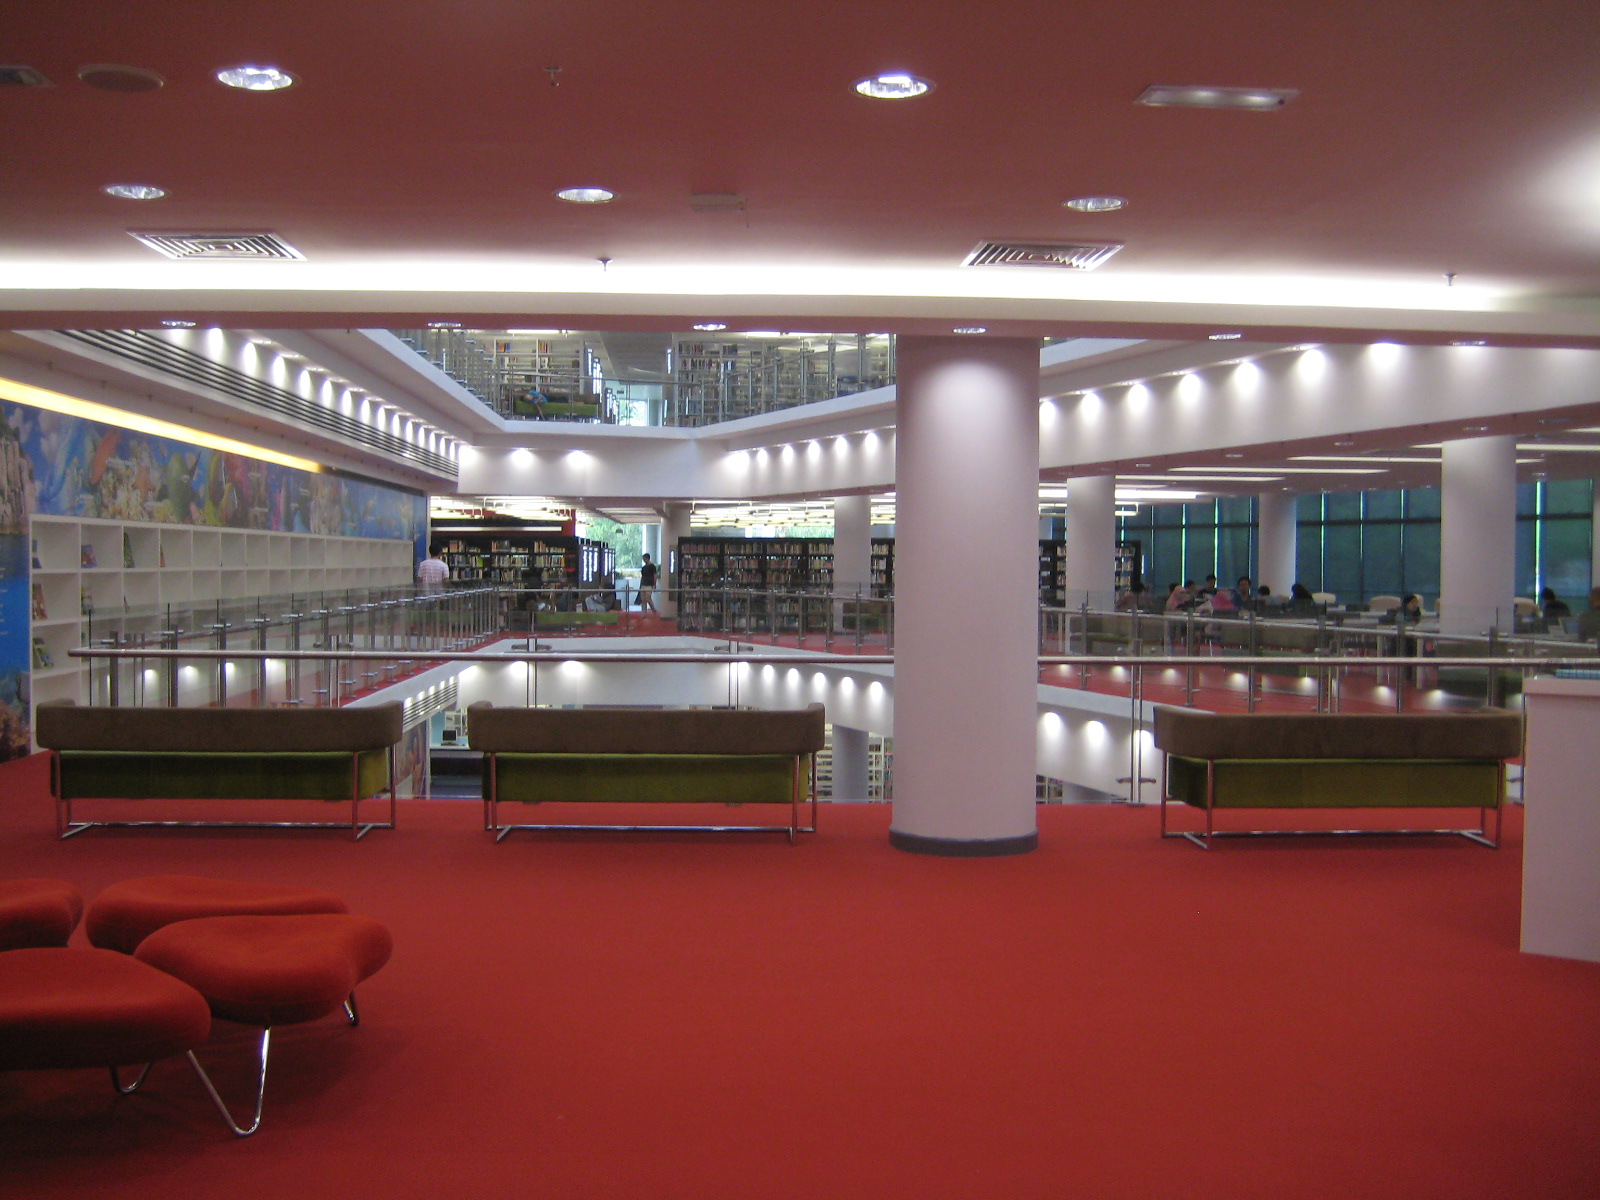 Catitan Gambar  Kunjungan ke Perpustakaan Baru Shah Alam  